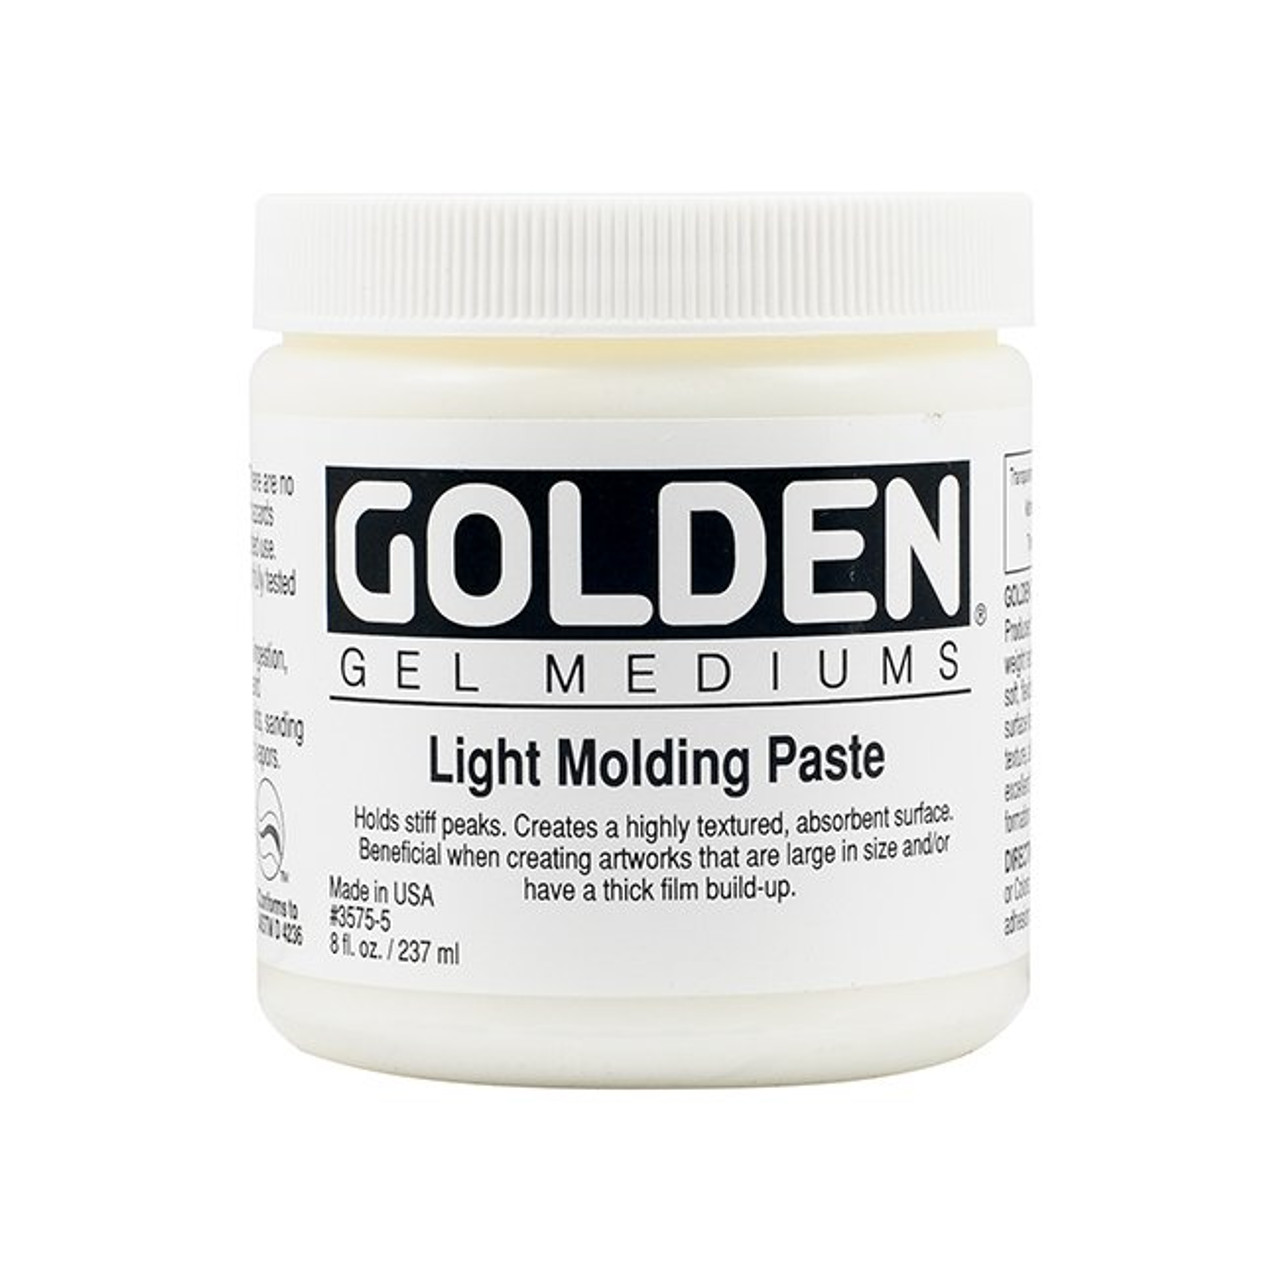 Golden Light Molding Paste - 8 oz.